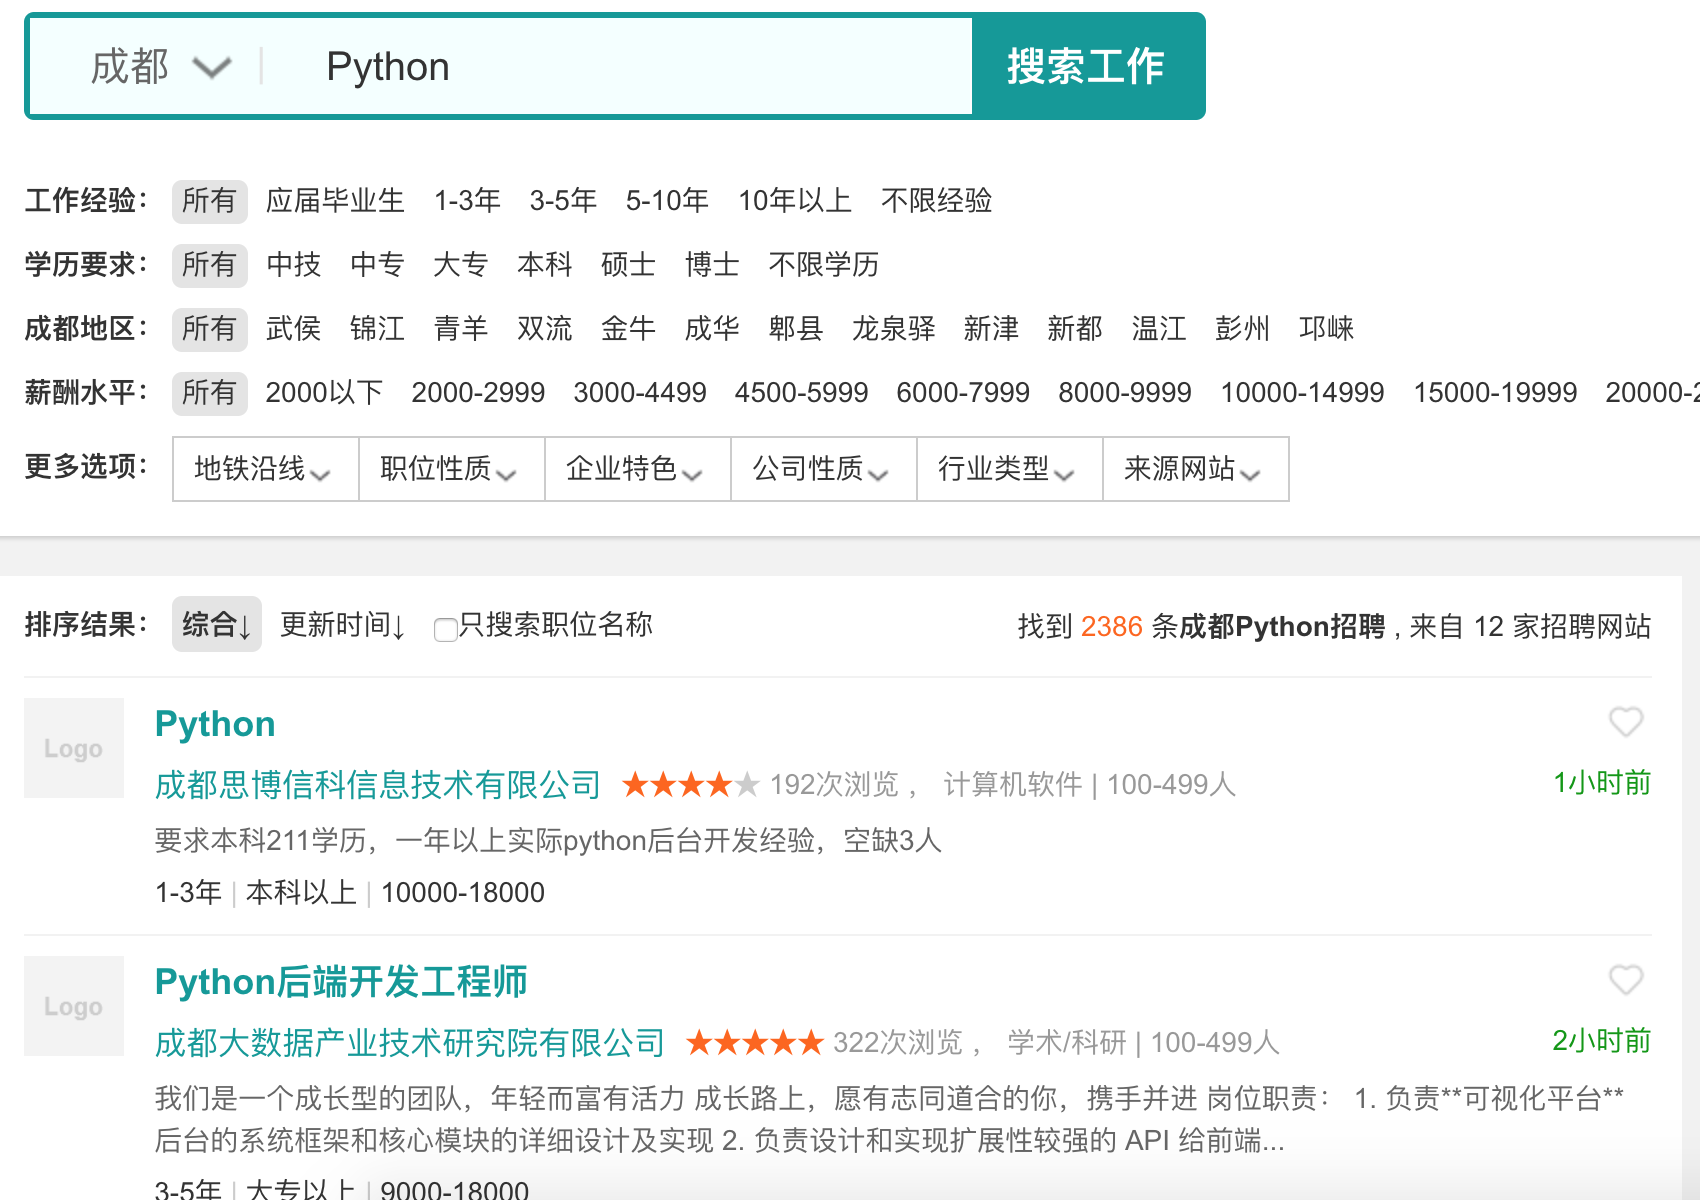 res/python_jobs_chengdu.png